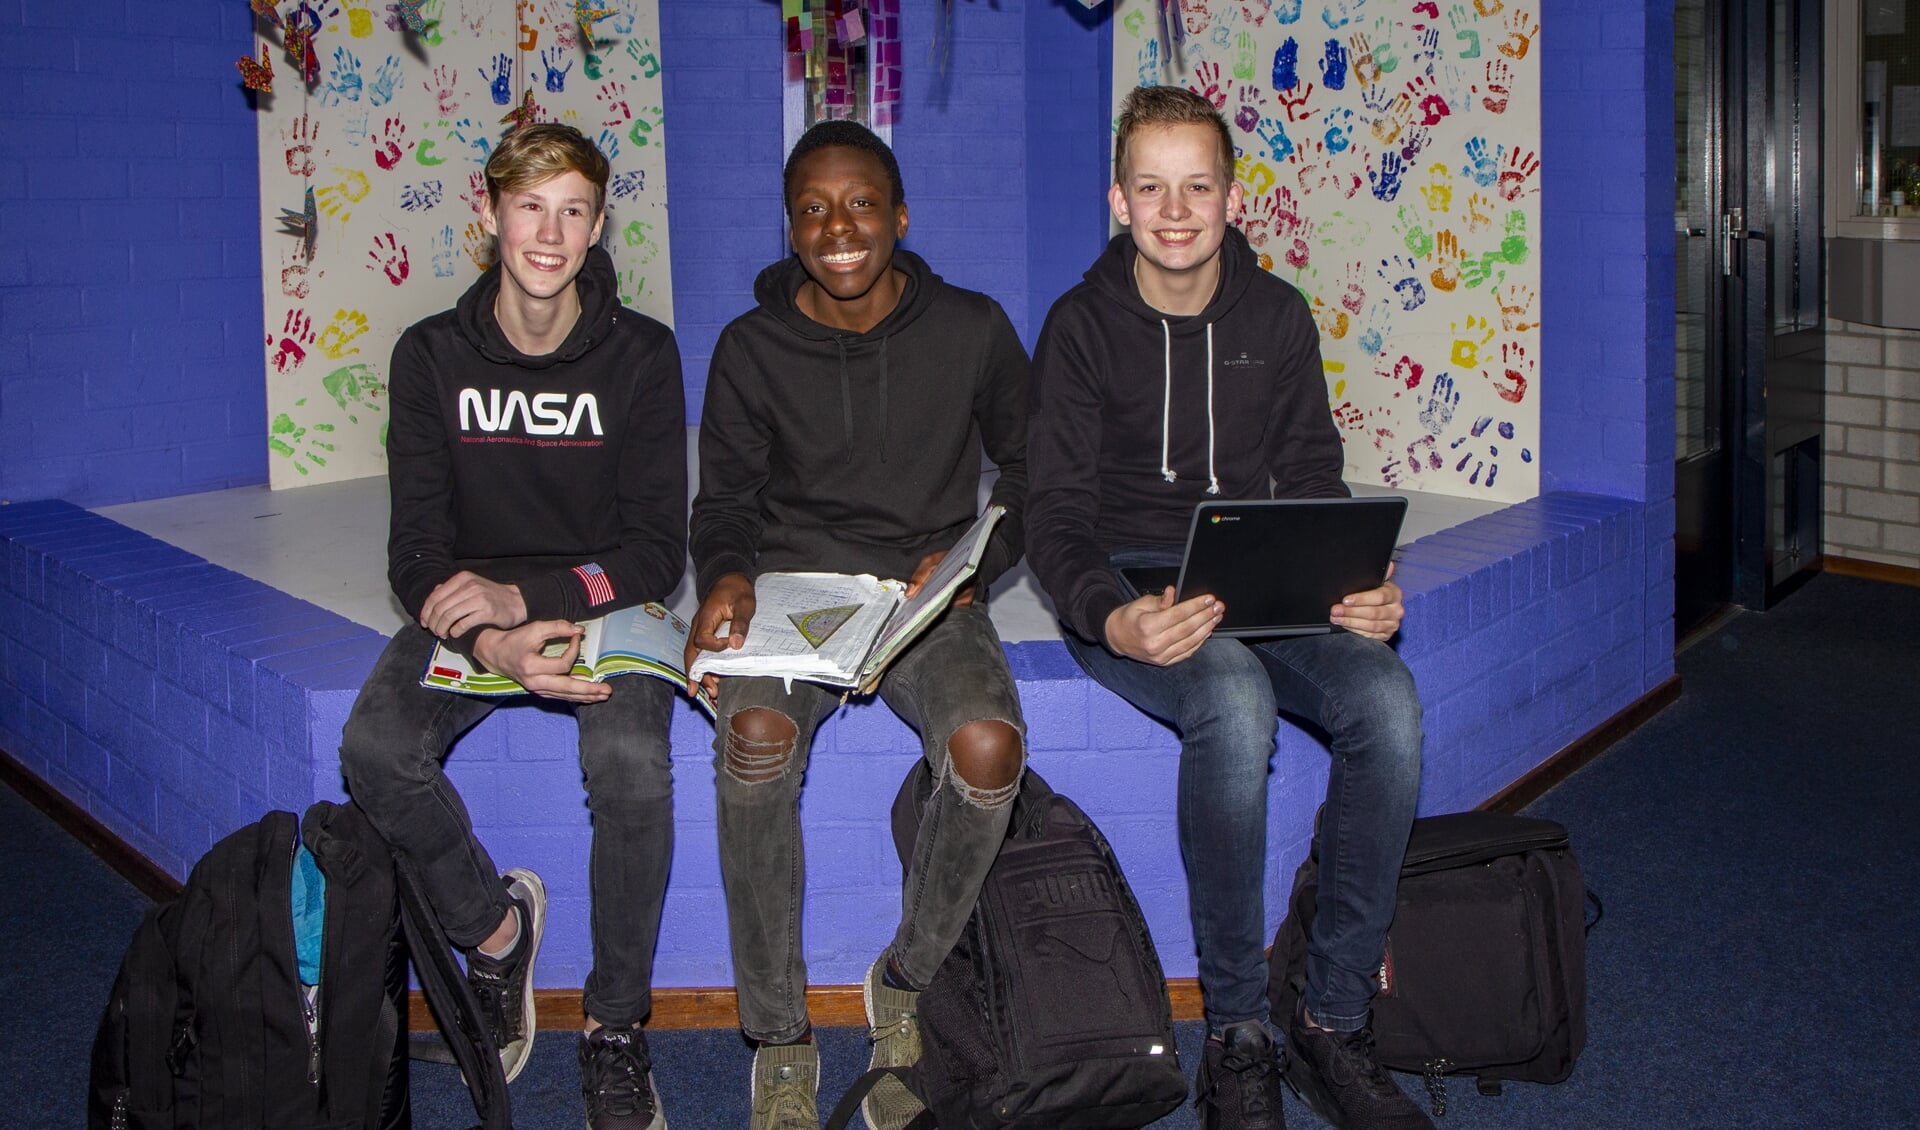 Klaas-Pieter, Méthode en Mike zitten met veel plezier op De Saad in Damwâld.Woensdag 5 februari heeft deze school een open avond.